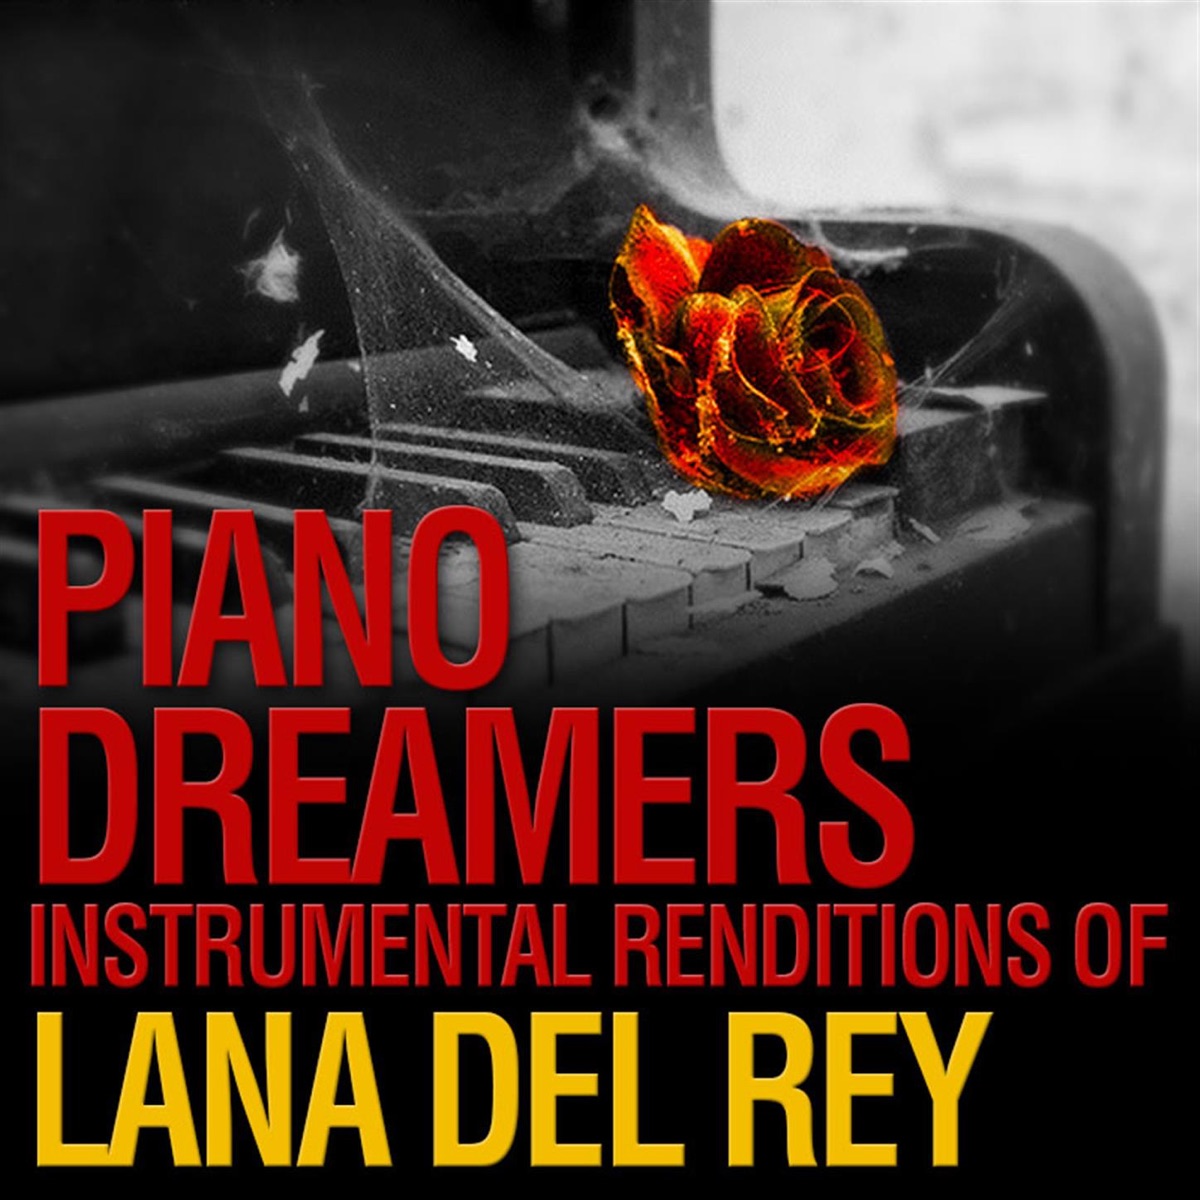 Лана Дель Рей – Once Upon a Dream | Слушать онлайн или скачать mp3 песню  бесплатно на Hitster.fm